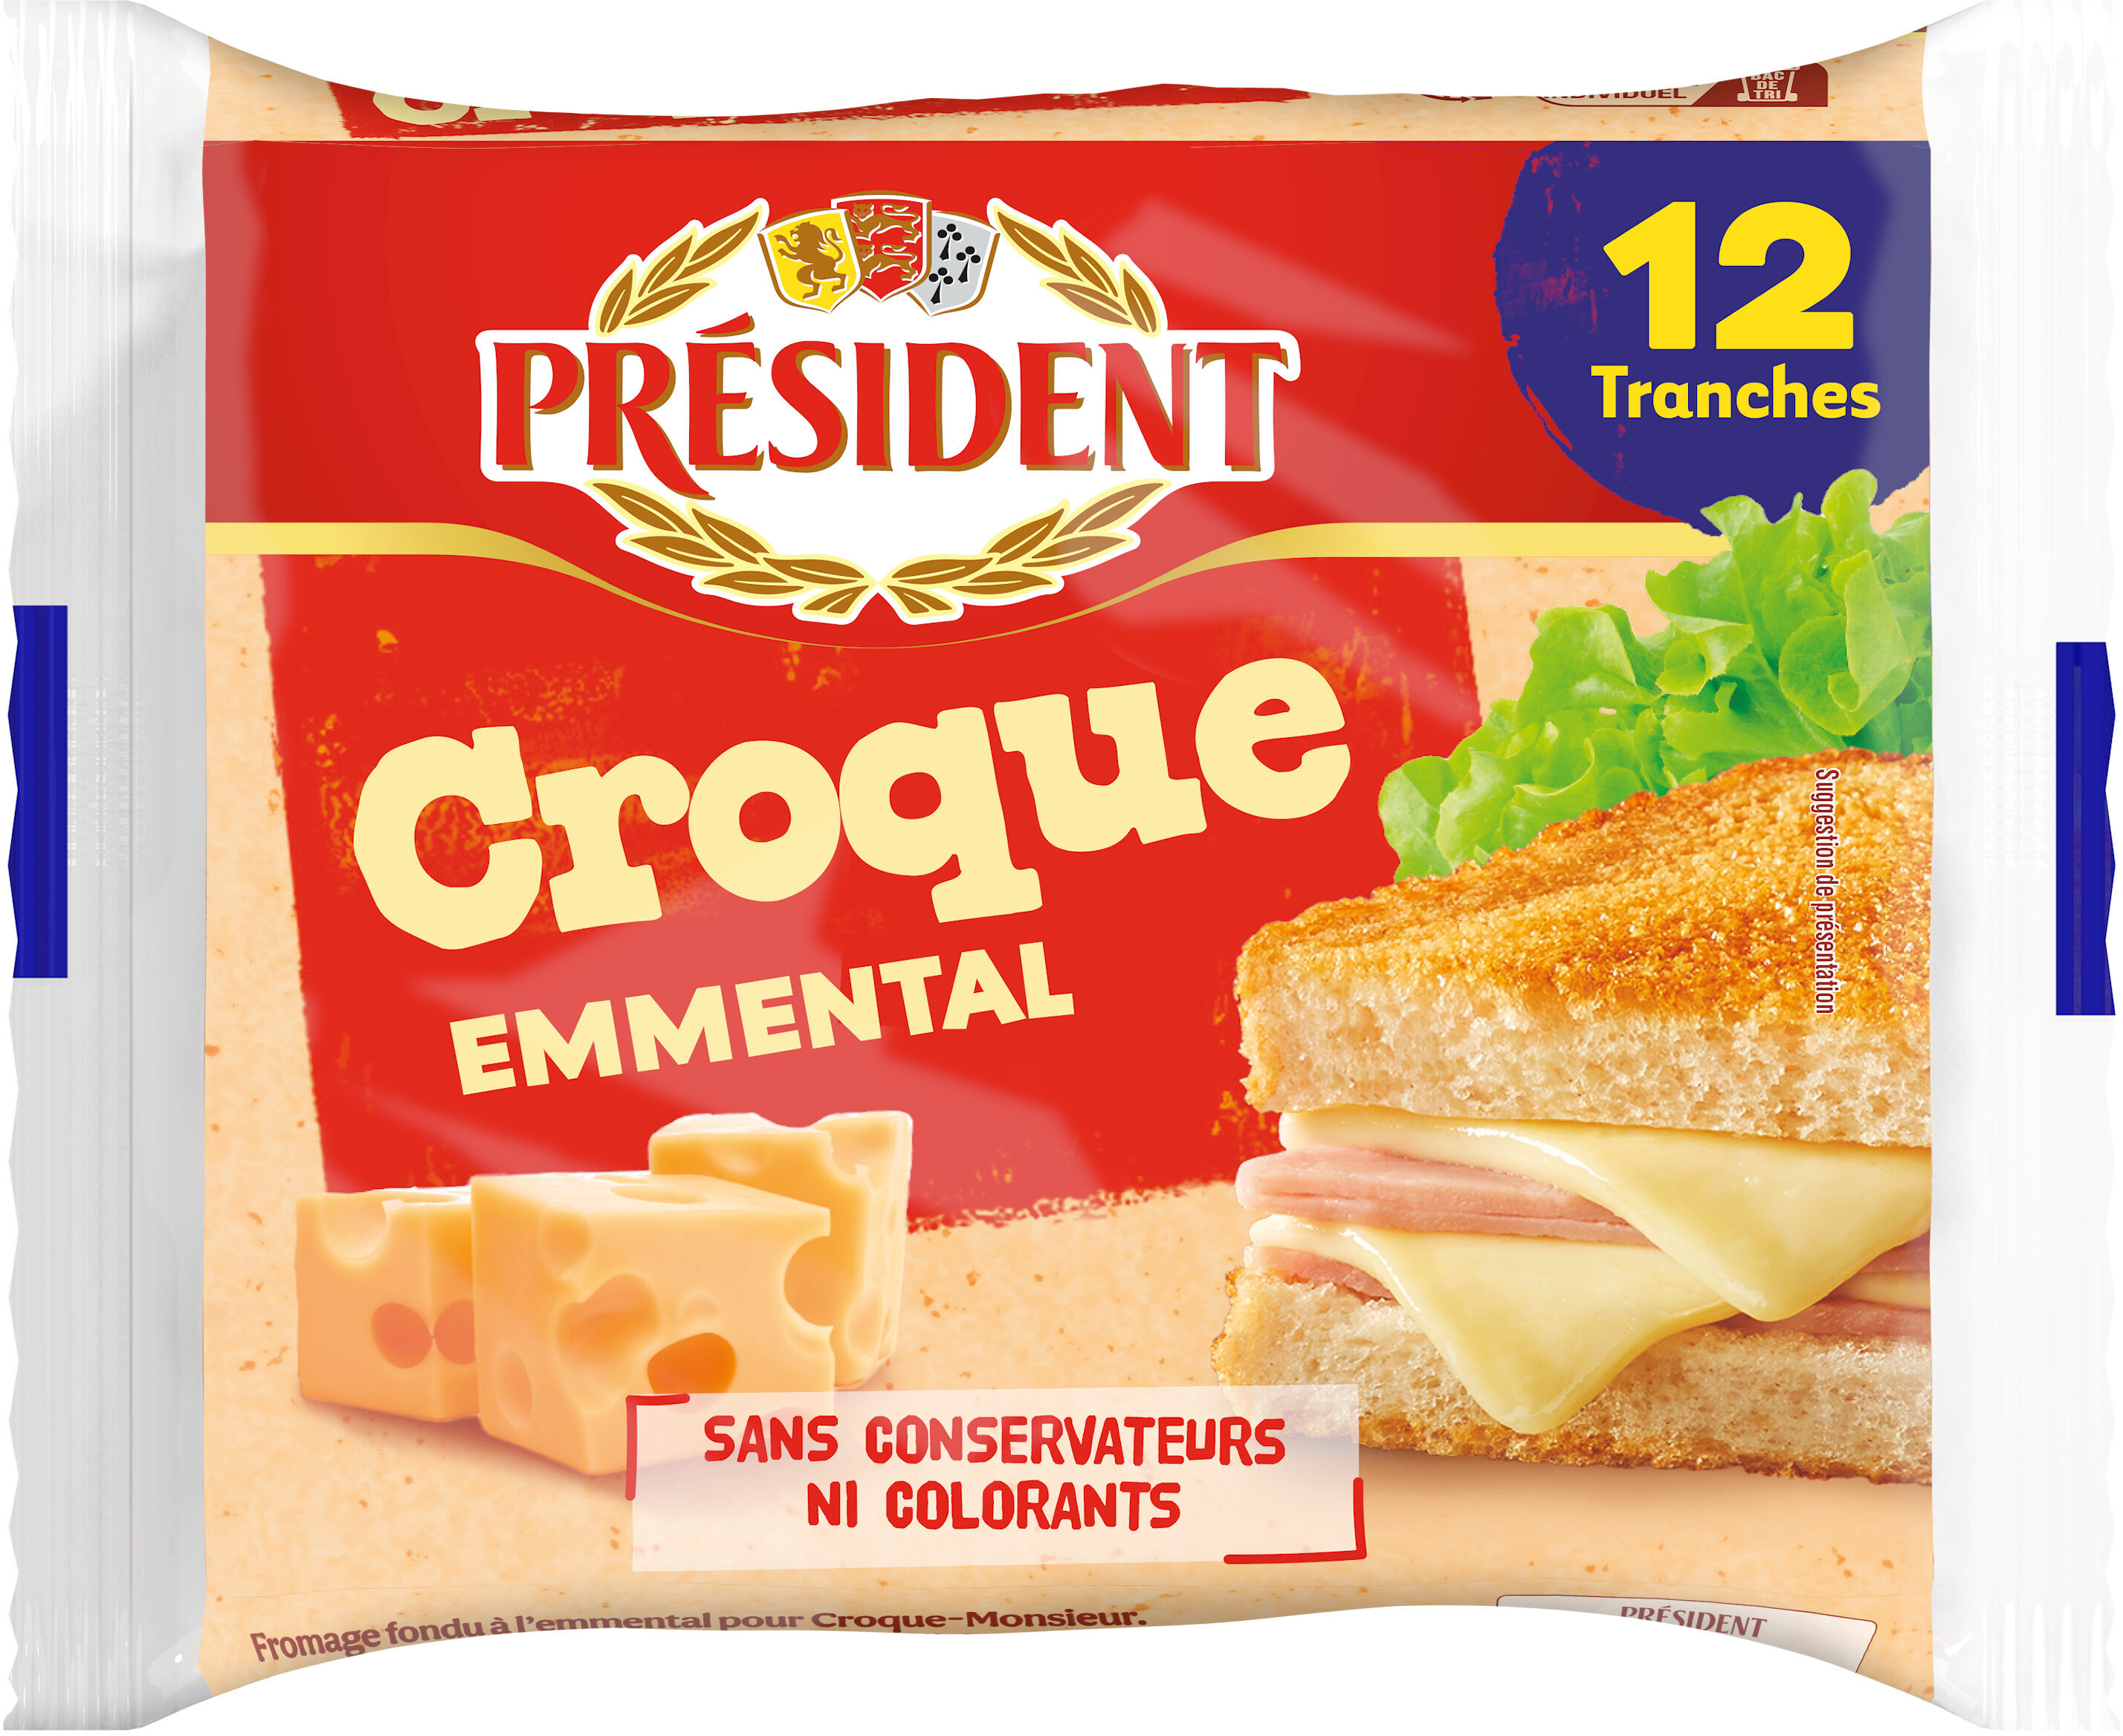 PRESIDENT CROQUE EMMENTAL 12 TRANCHES 200g - Produkt - fr